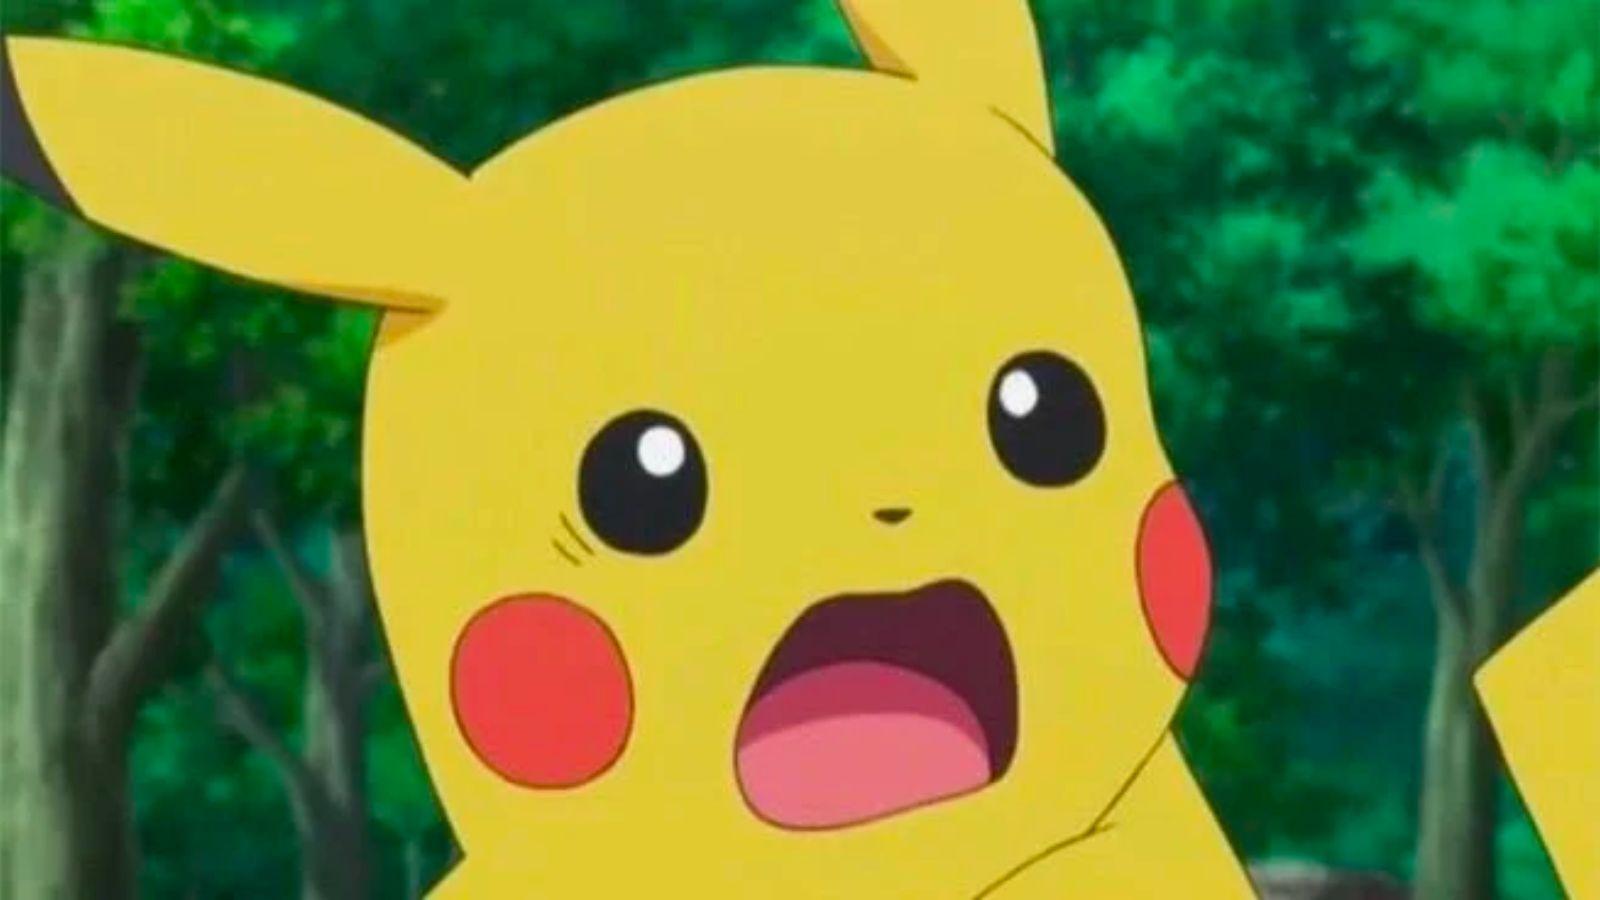 Pokemon Pikachu is very surprised